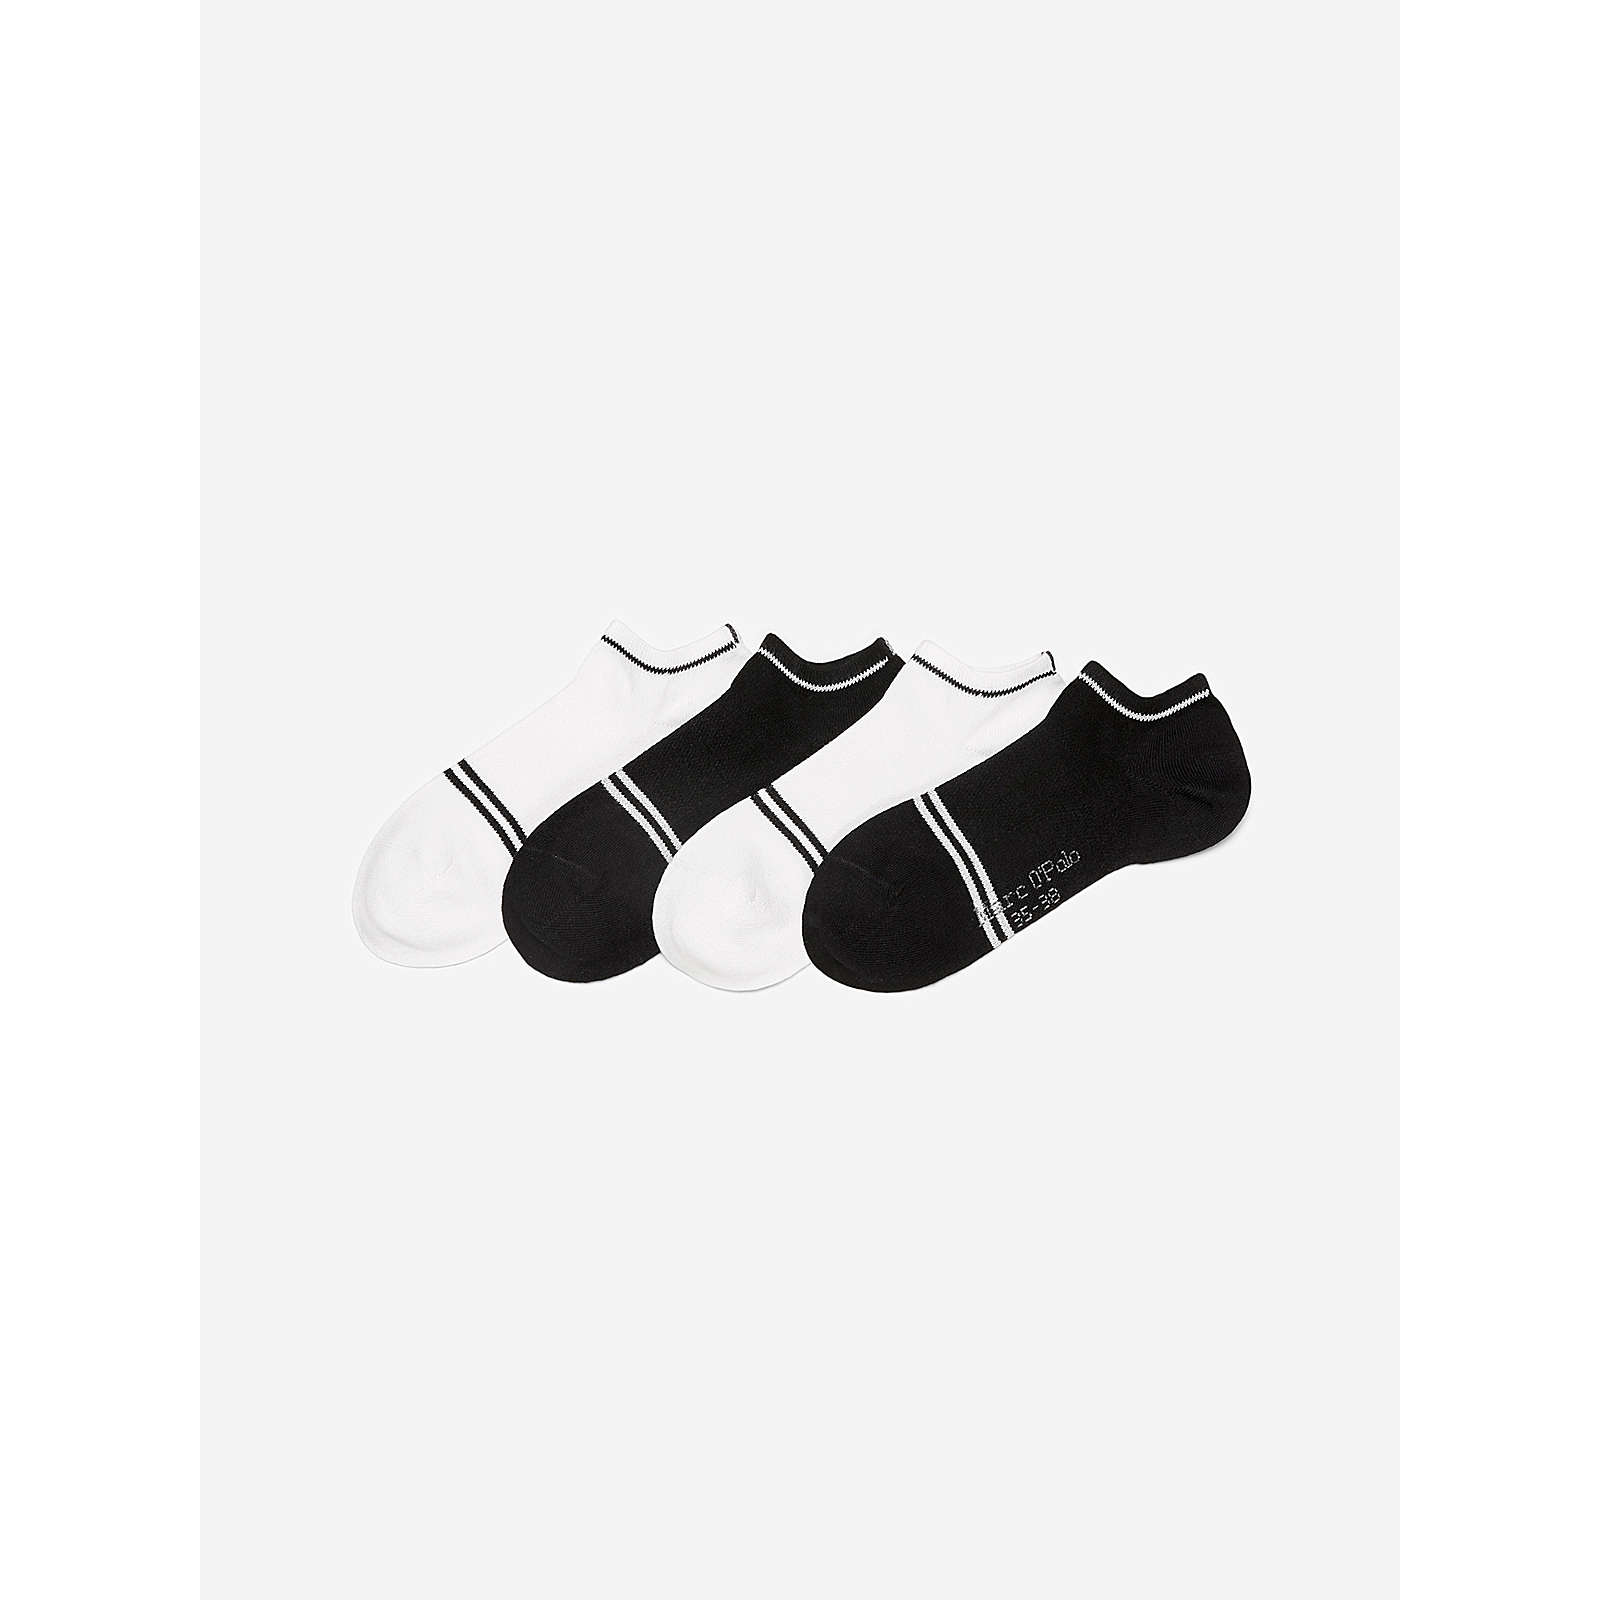 MARC O'POLO Sneaker Socken 4-Pack Ayla Füßlinge bunt Damen Gr. 39-42